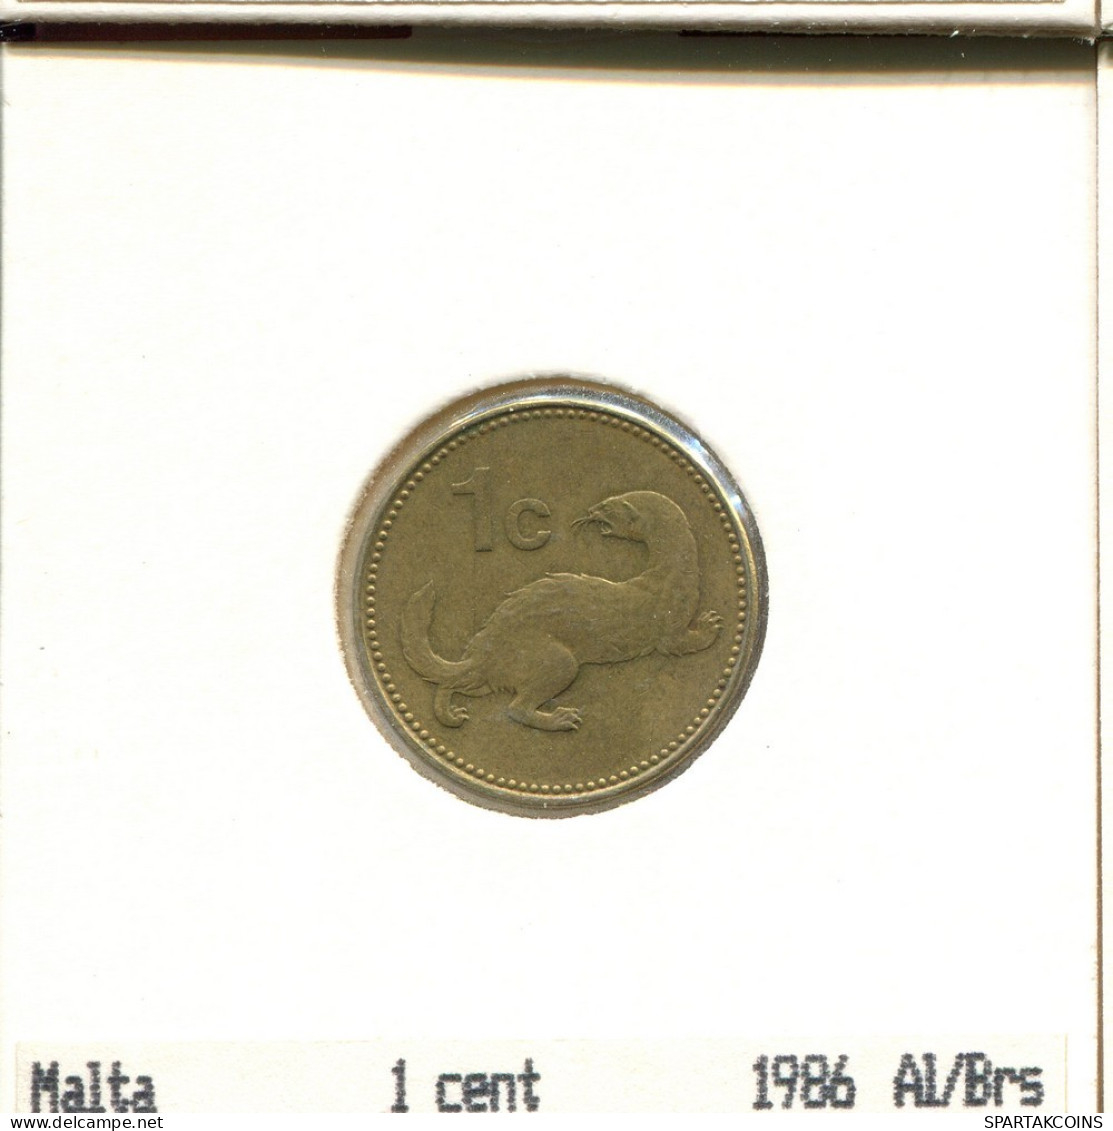 1 CENT 1986 MALTA Coin #AS634.U.A - Malta